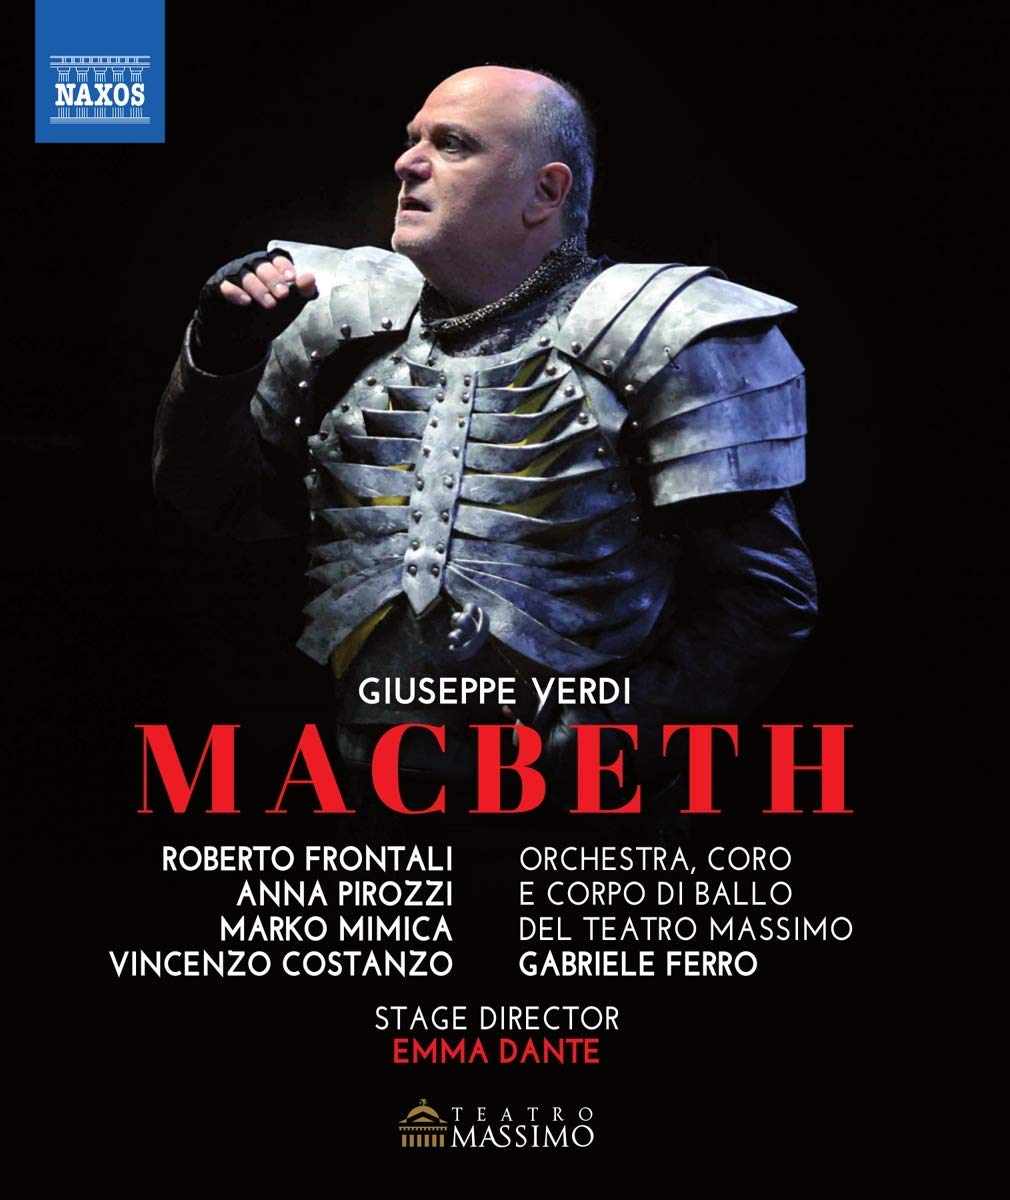 Music Blu-Ray Giuseppe Verdi - Macbeth NUOVO SIGILLATO, EDIZIONE DEL 06/09/2018 SUBITO DISPONIBILE